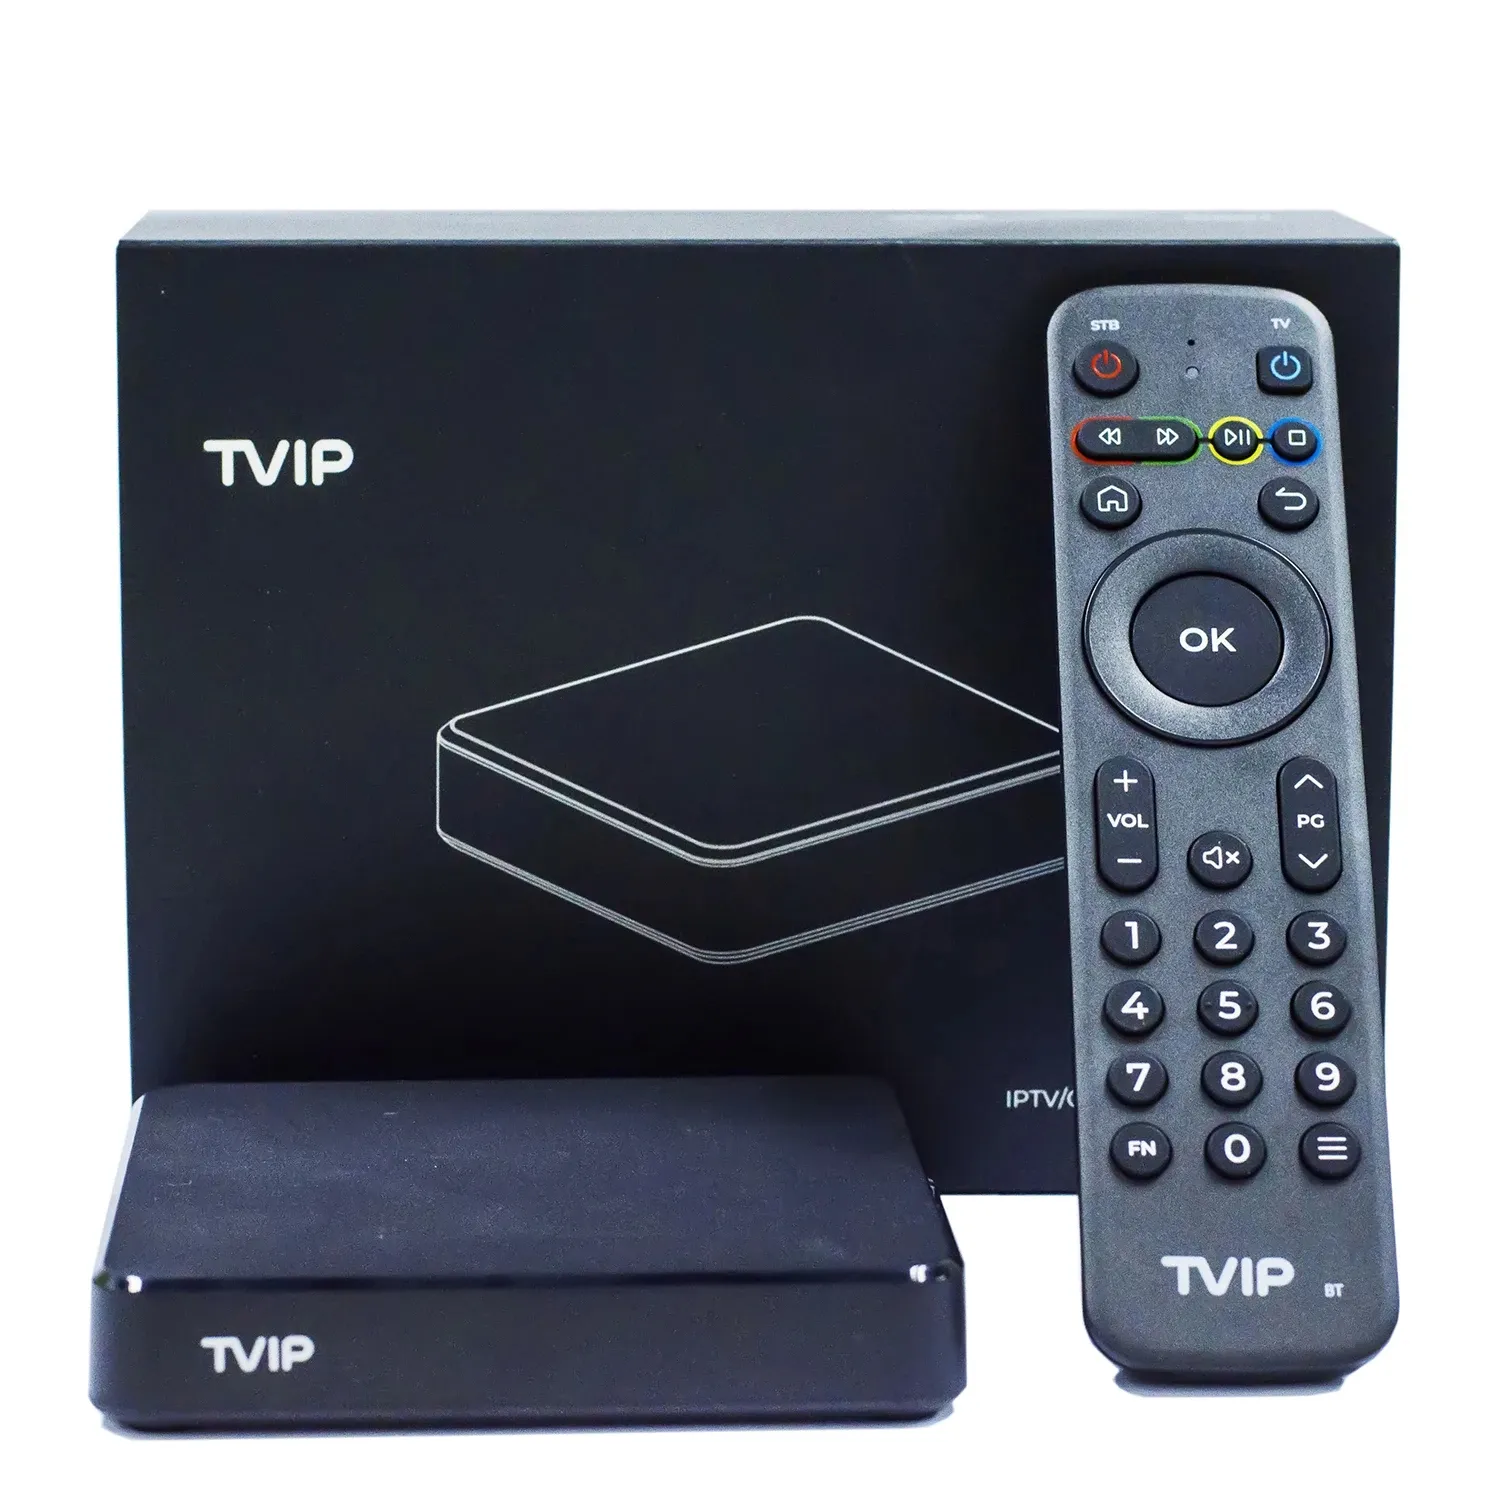 Nouveau boîtier de télévision Tvip605 SE BT 4K Amlogic S905X android Linux double système double décodeur wifi et boîtier IPTV intelligent nordique